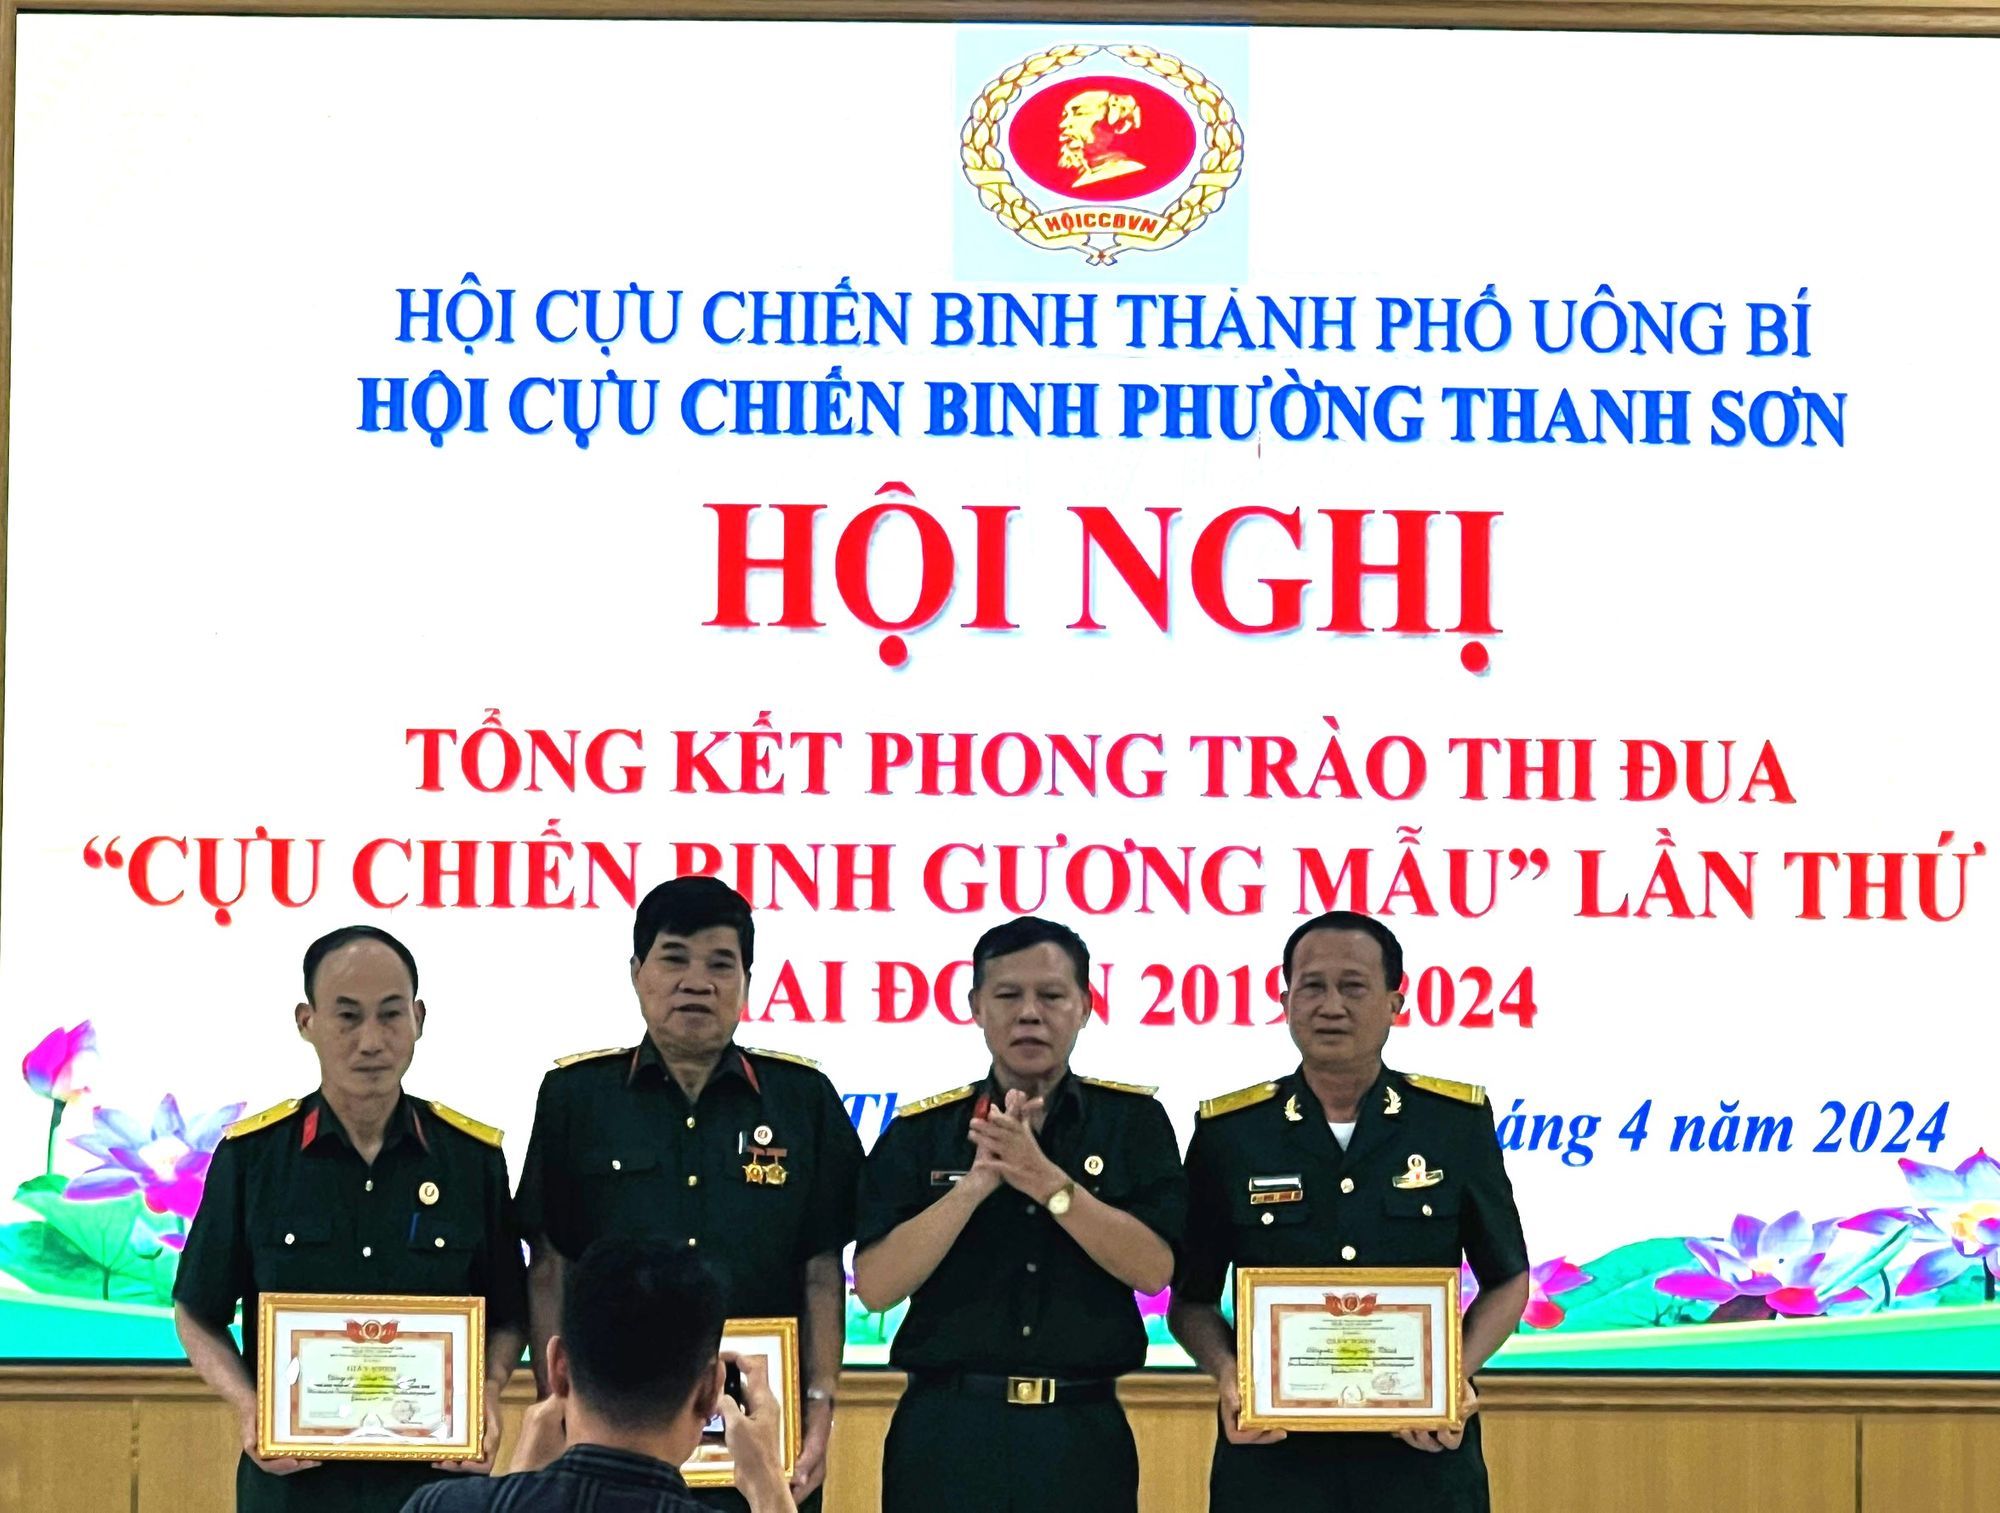 Hội CCB phường Thanh Sơn (Quảng Ninh): Tổng kết phong trào thi đua “CCB gương mẫu” giai đoạn 2019-2024